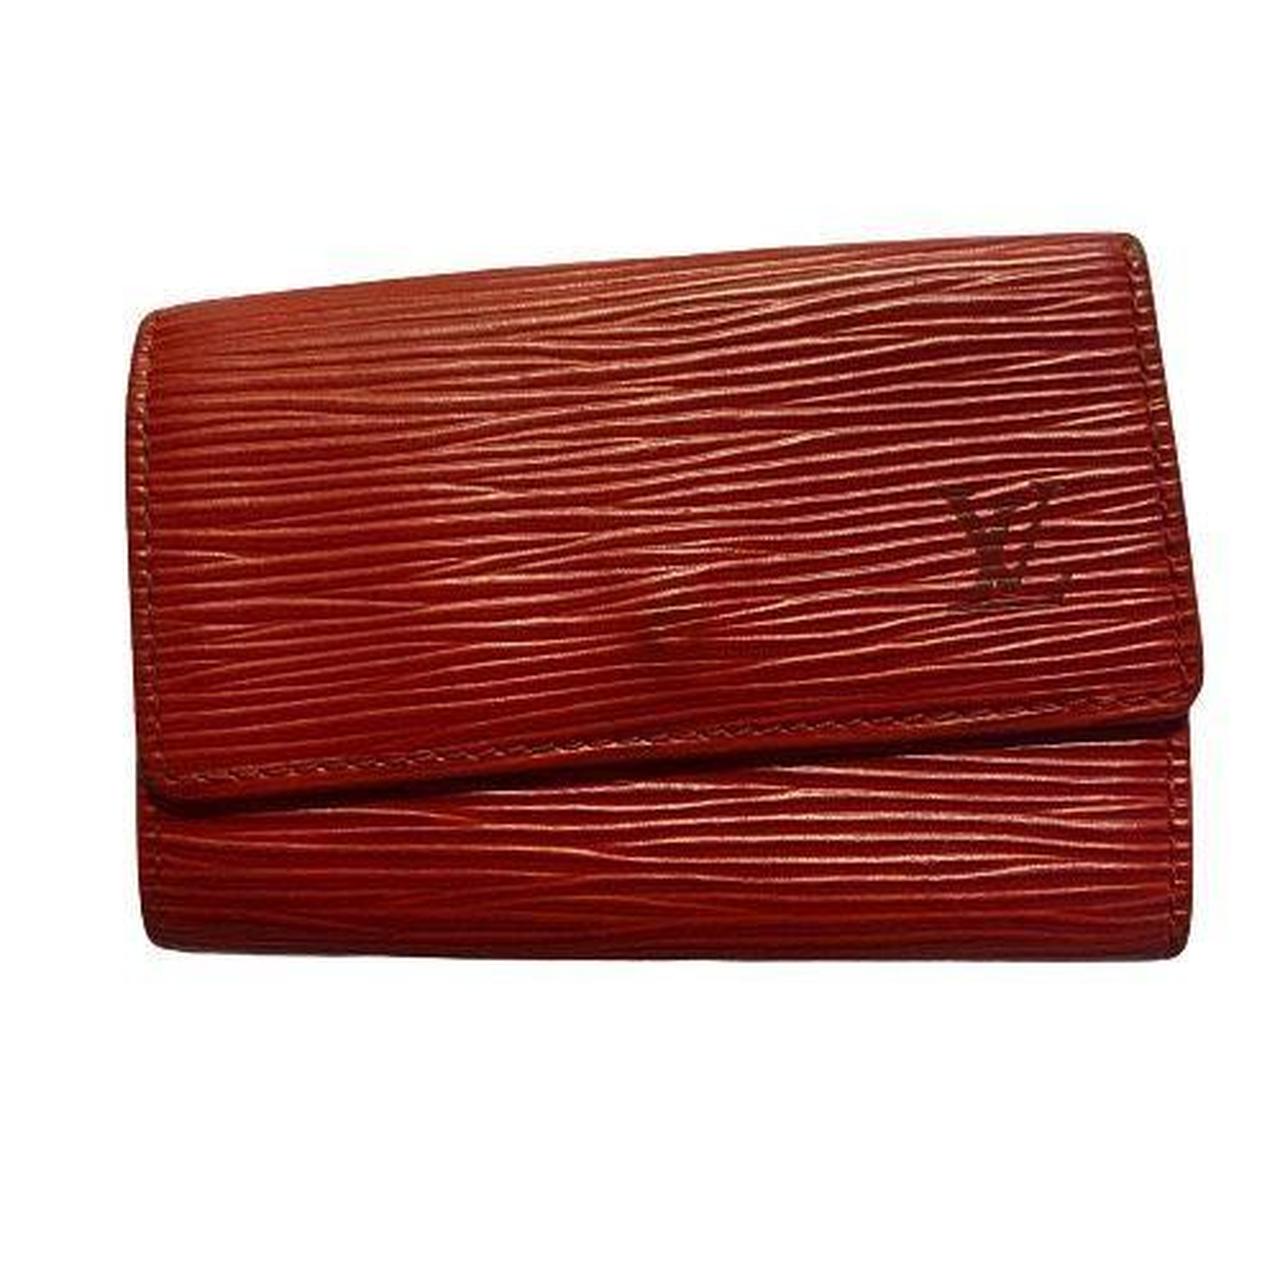 Louis Vuitton, Bags, Authenticlouis Vuitton Epi Wallet